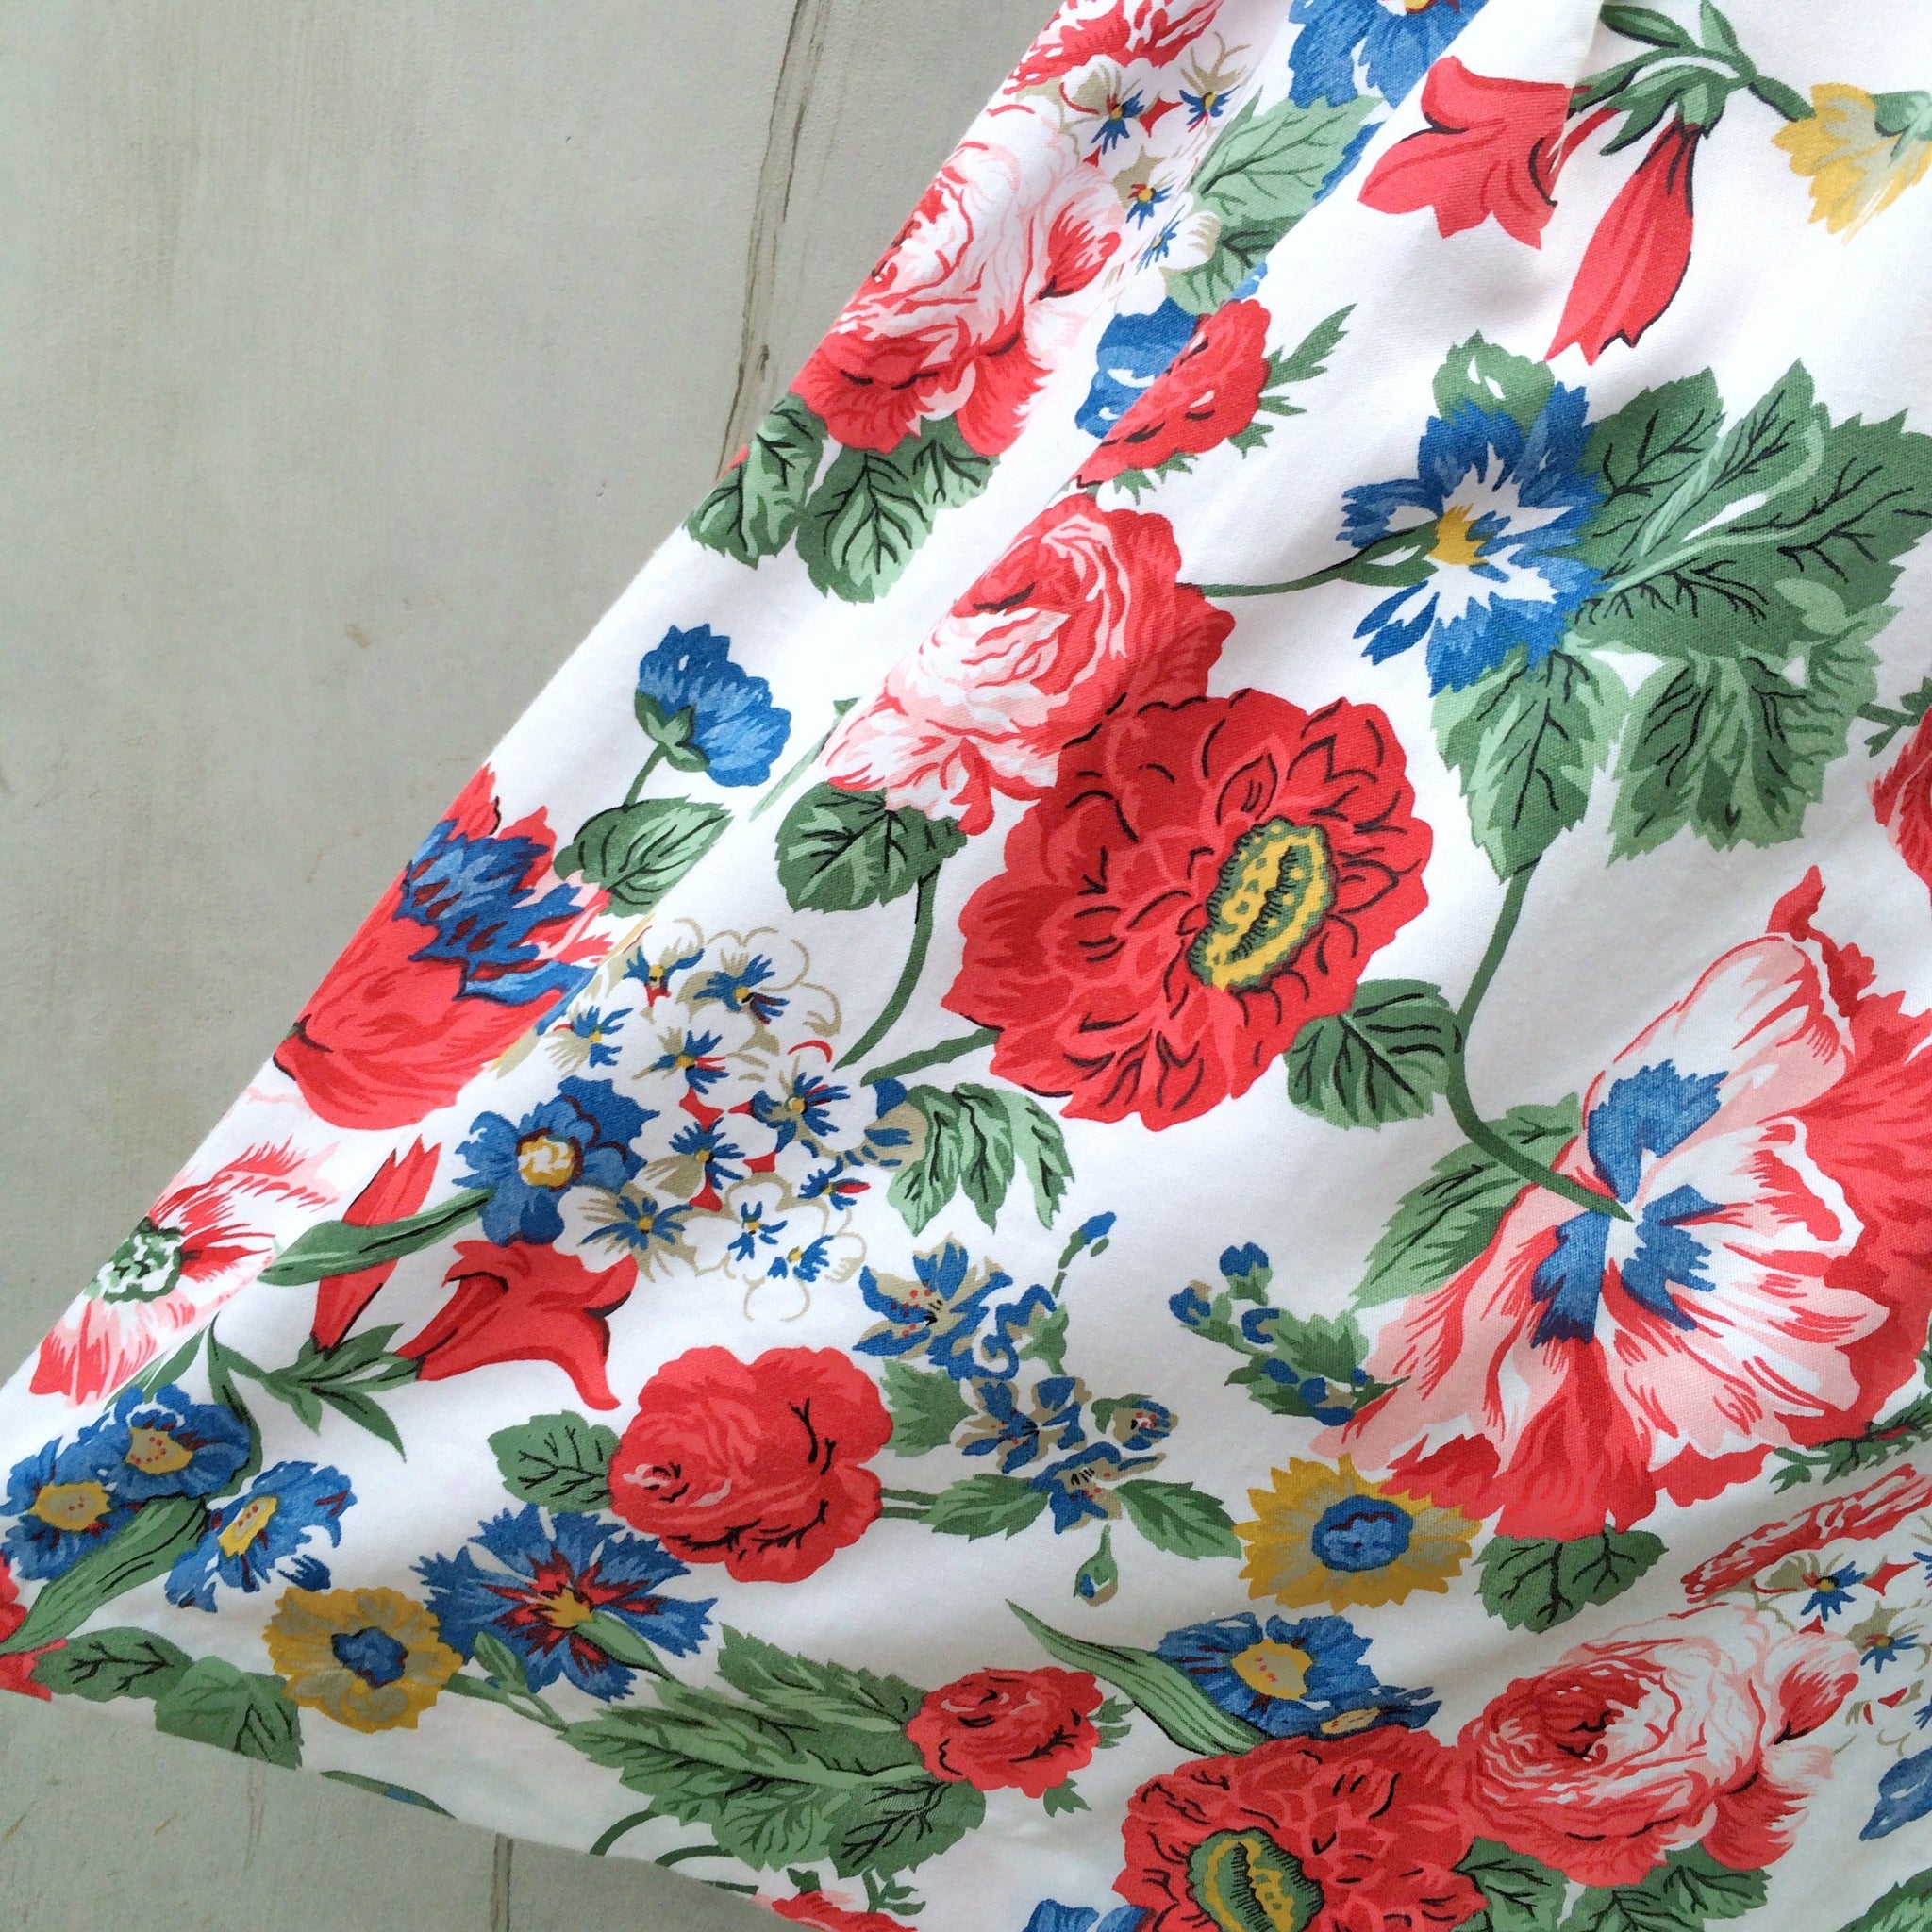 Summer Roses | Vintage 1980s Koret floral rose print skirt with pocket!